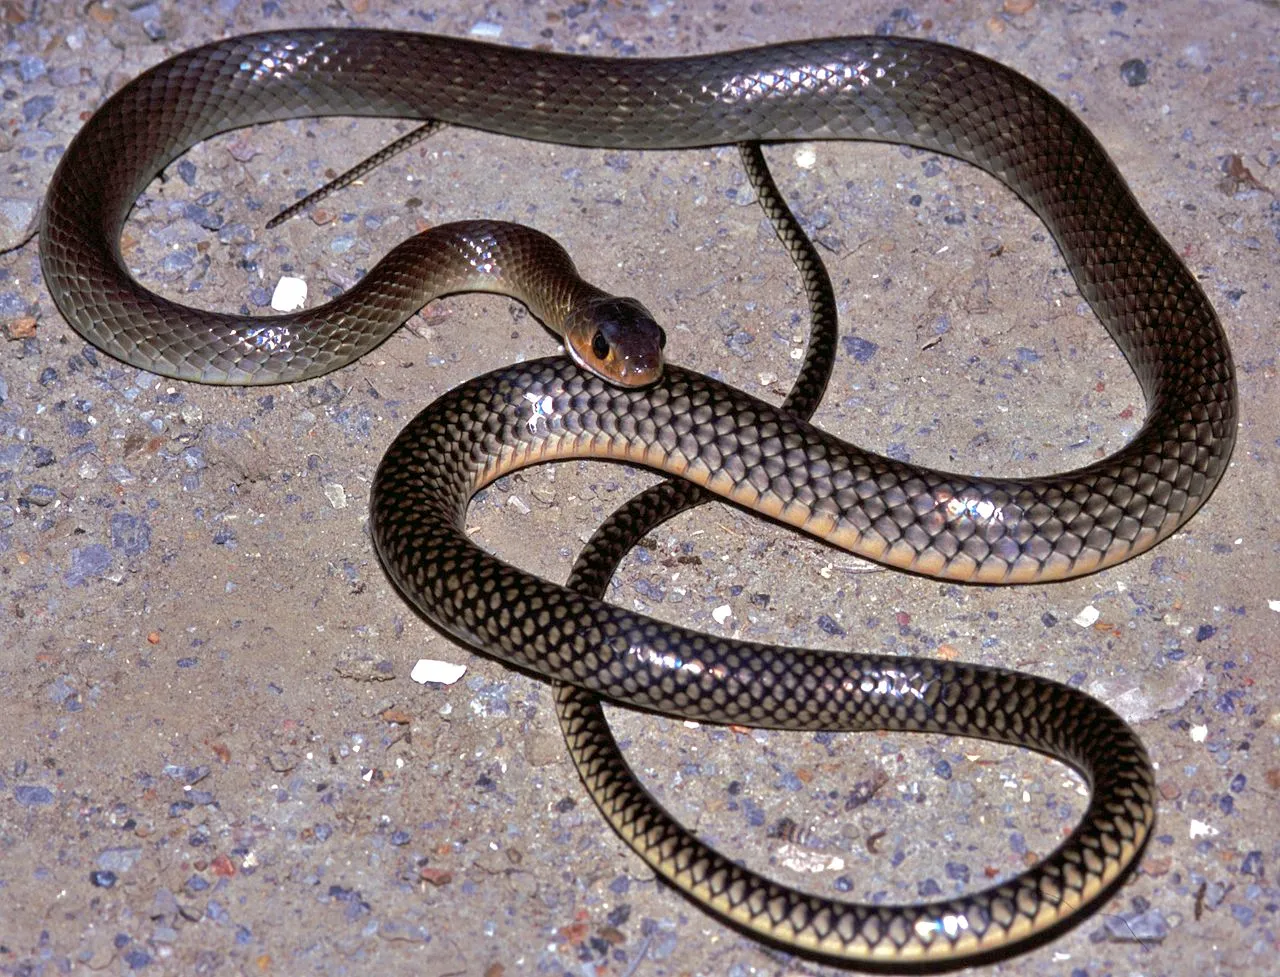 gopher snake vs rat snake